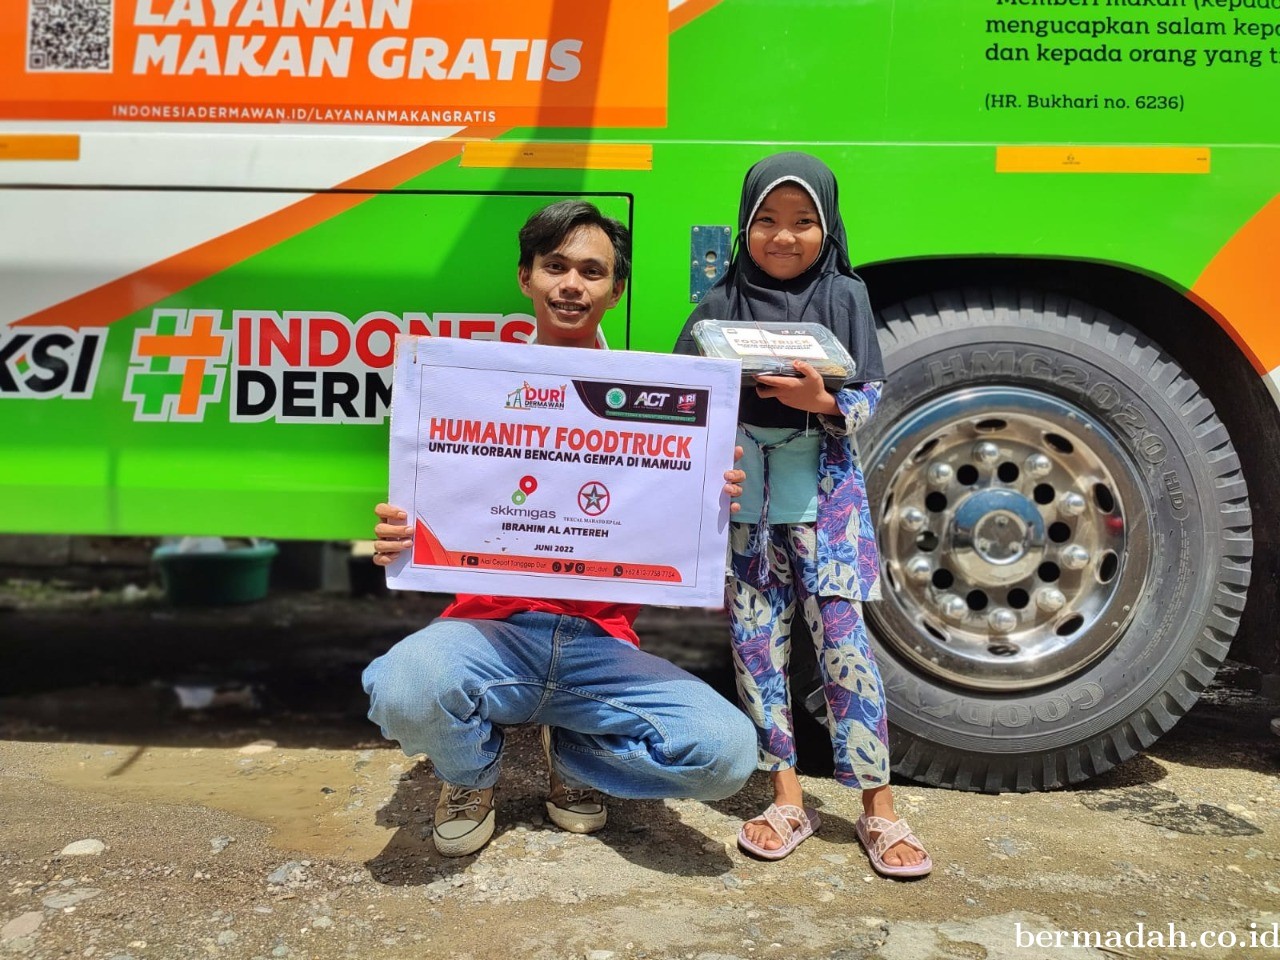 Bersama Donatur ACT Duri, Bantu Penyintas Bencana Alam Mamuju